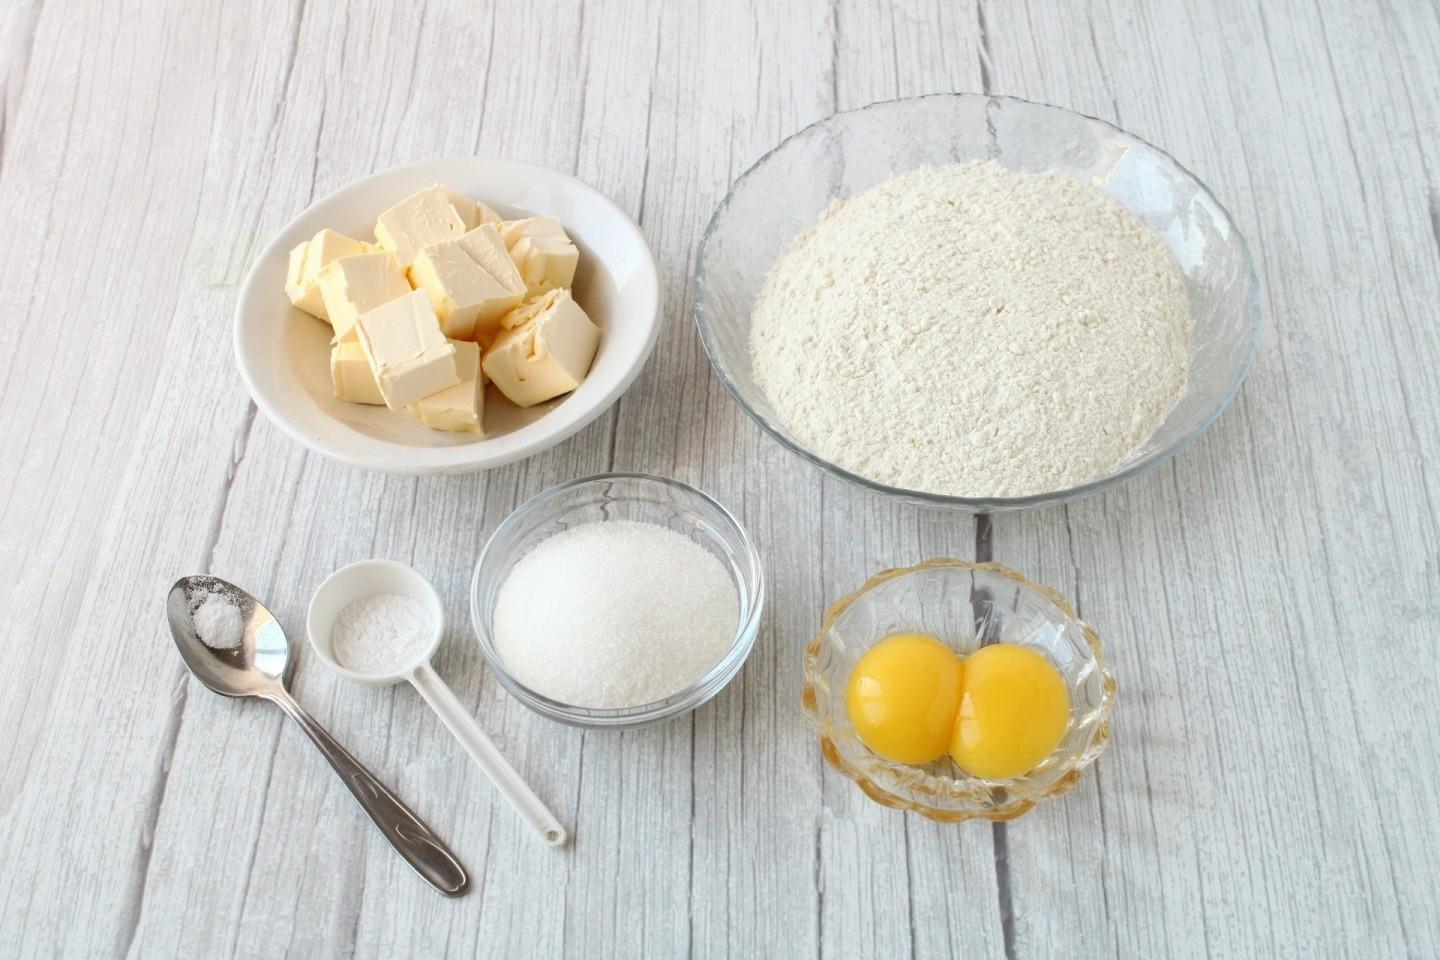 Печенье сливочное масло сахар мука яйца. Из белков изюма цедры. Что можно использовать вместо ванилина. Пособие по русскому языку тарелки печеньки яйца мука.